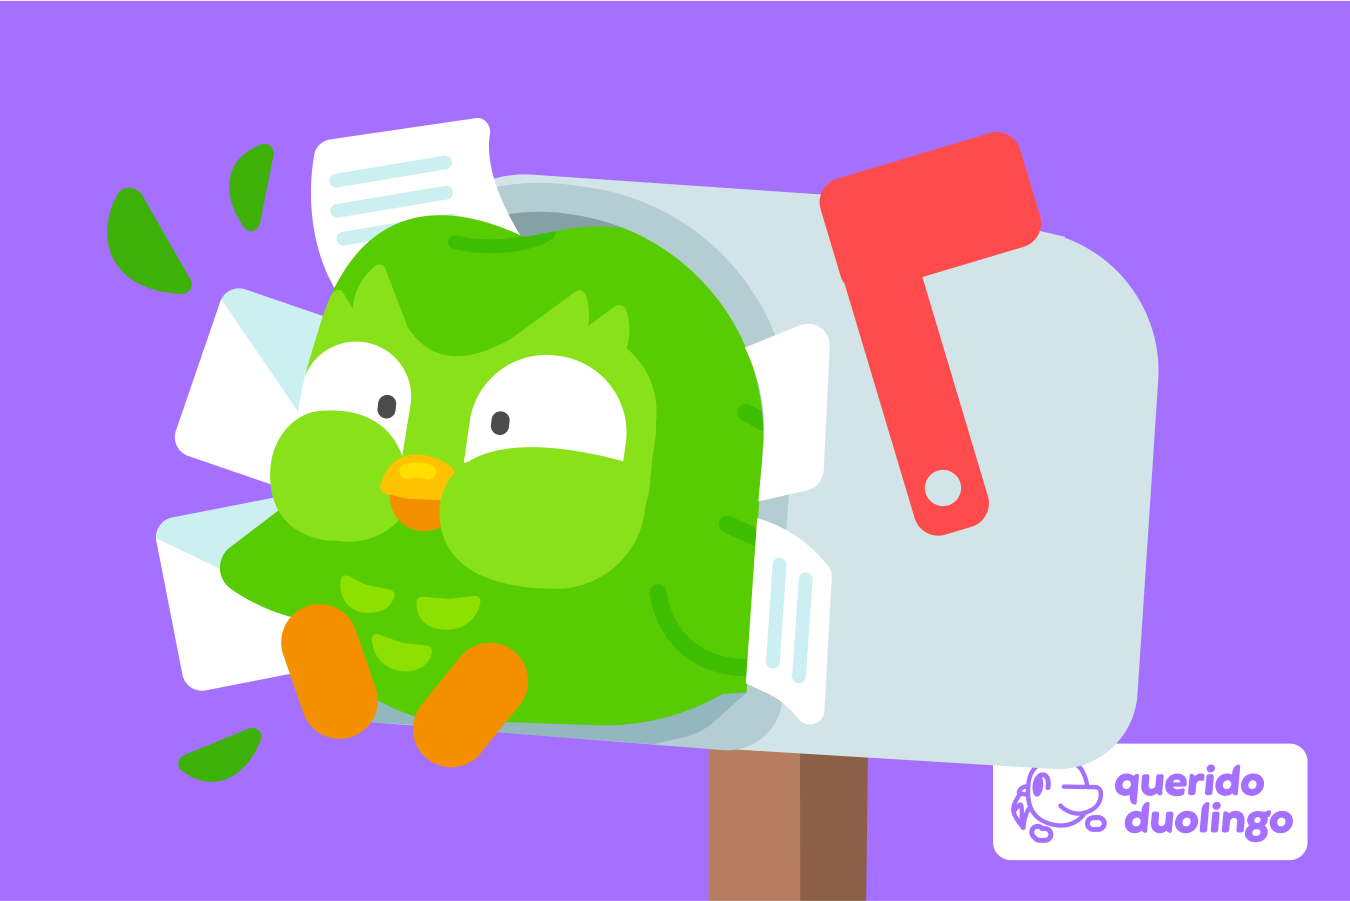 Querido Duolingo: Será que os videogames podem ajudar a aprender um idioma?